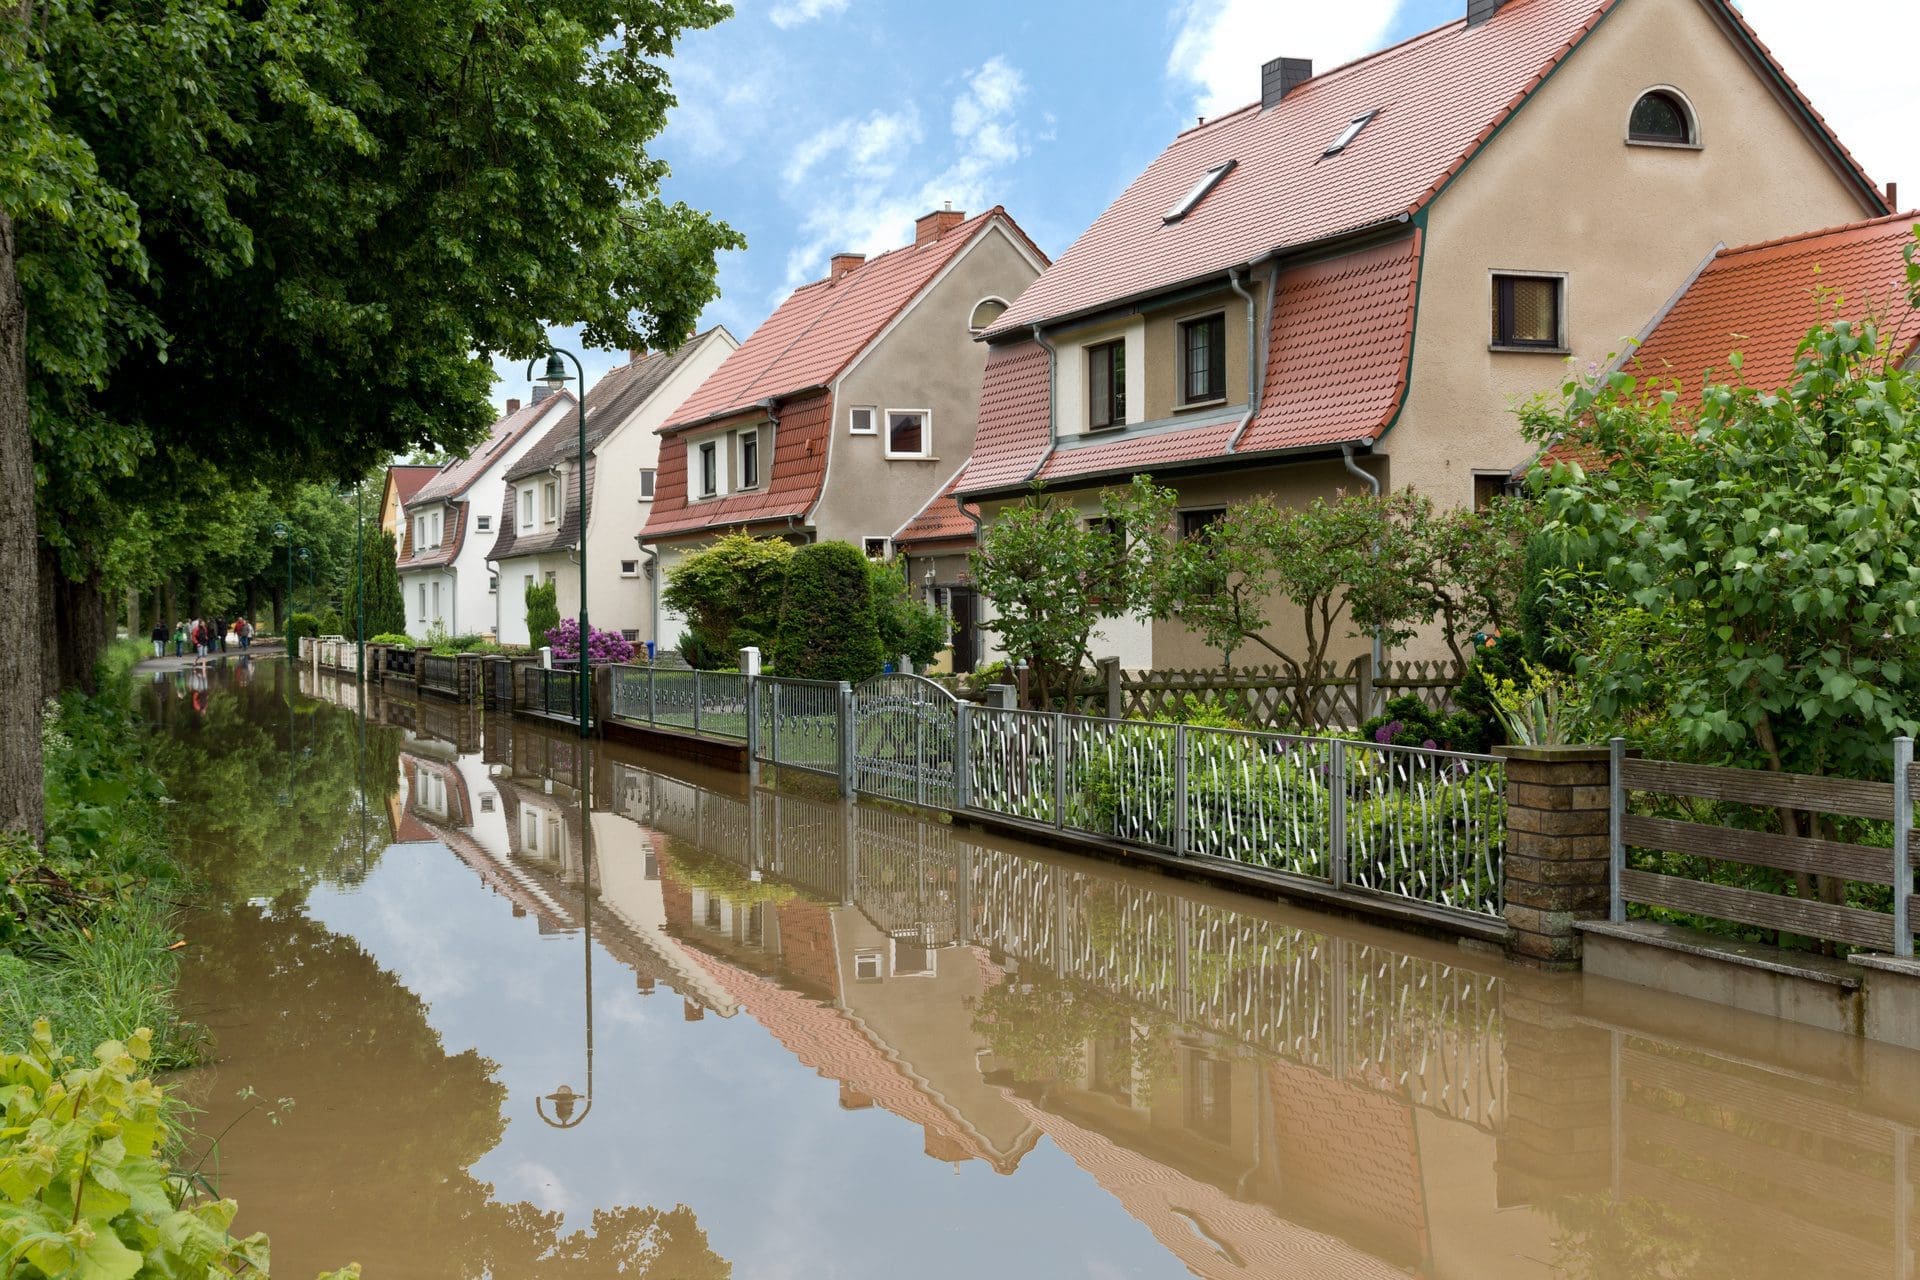 Hochwasserschaden melden | Schadensmeldung an die Versicherung nach der Flut richtig vornehmen... (© Stephanie Eichler / stock.adobe.com)